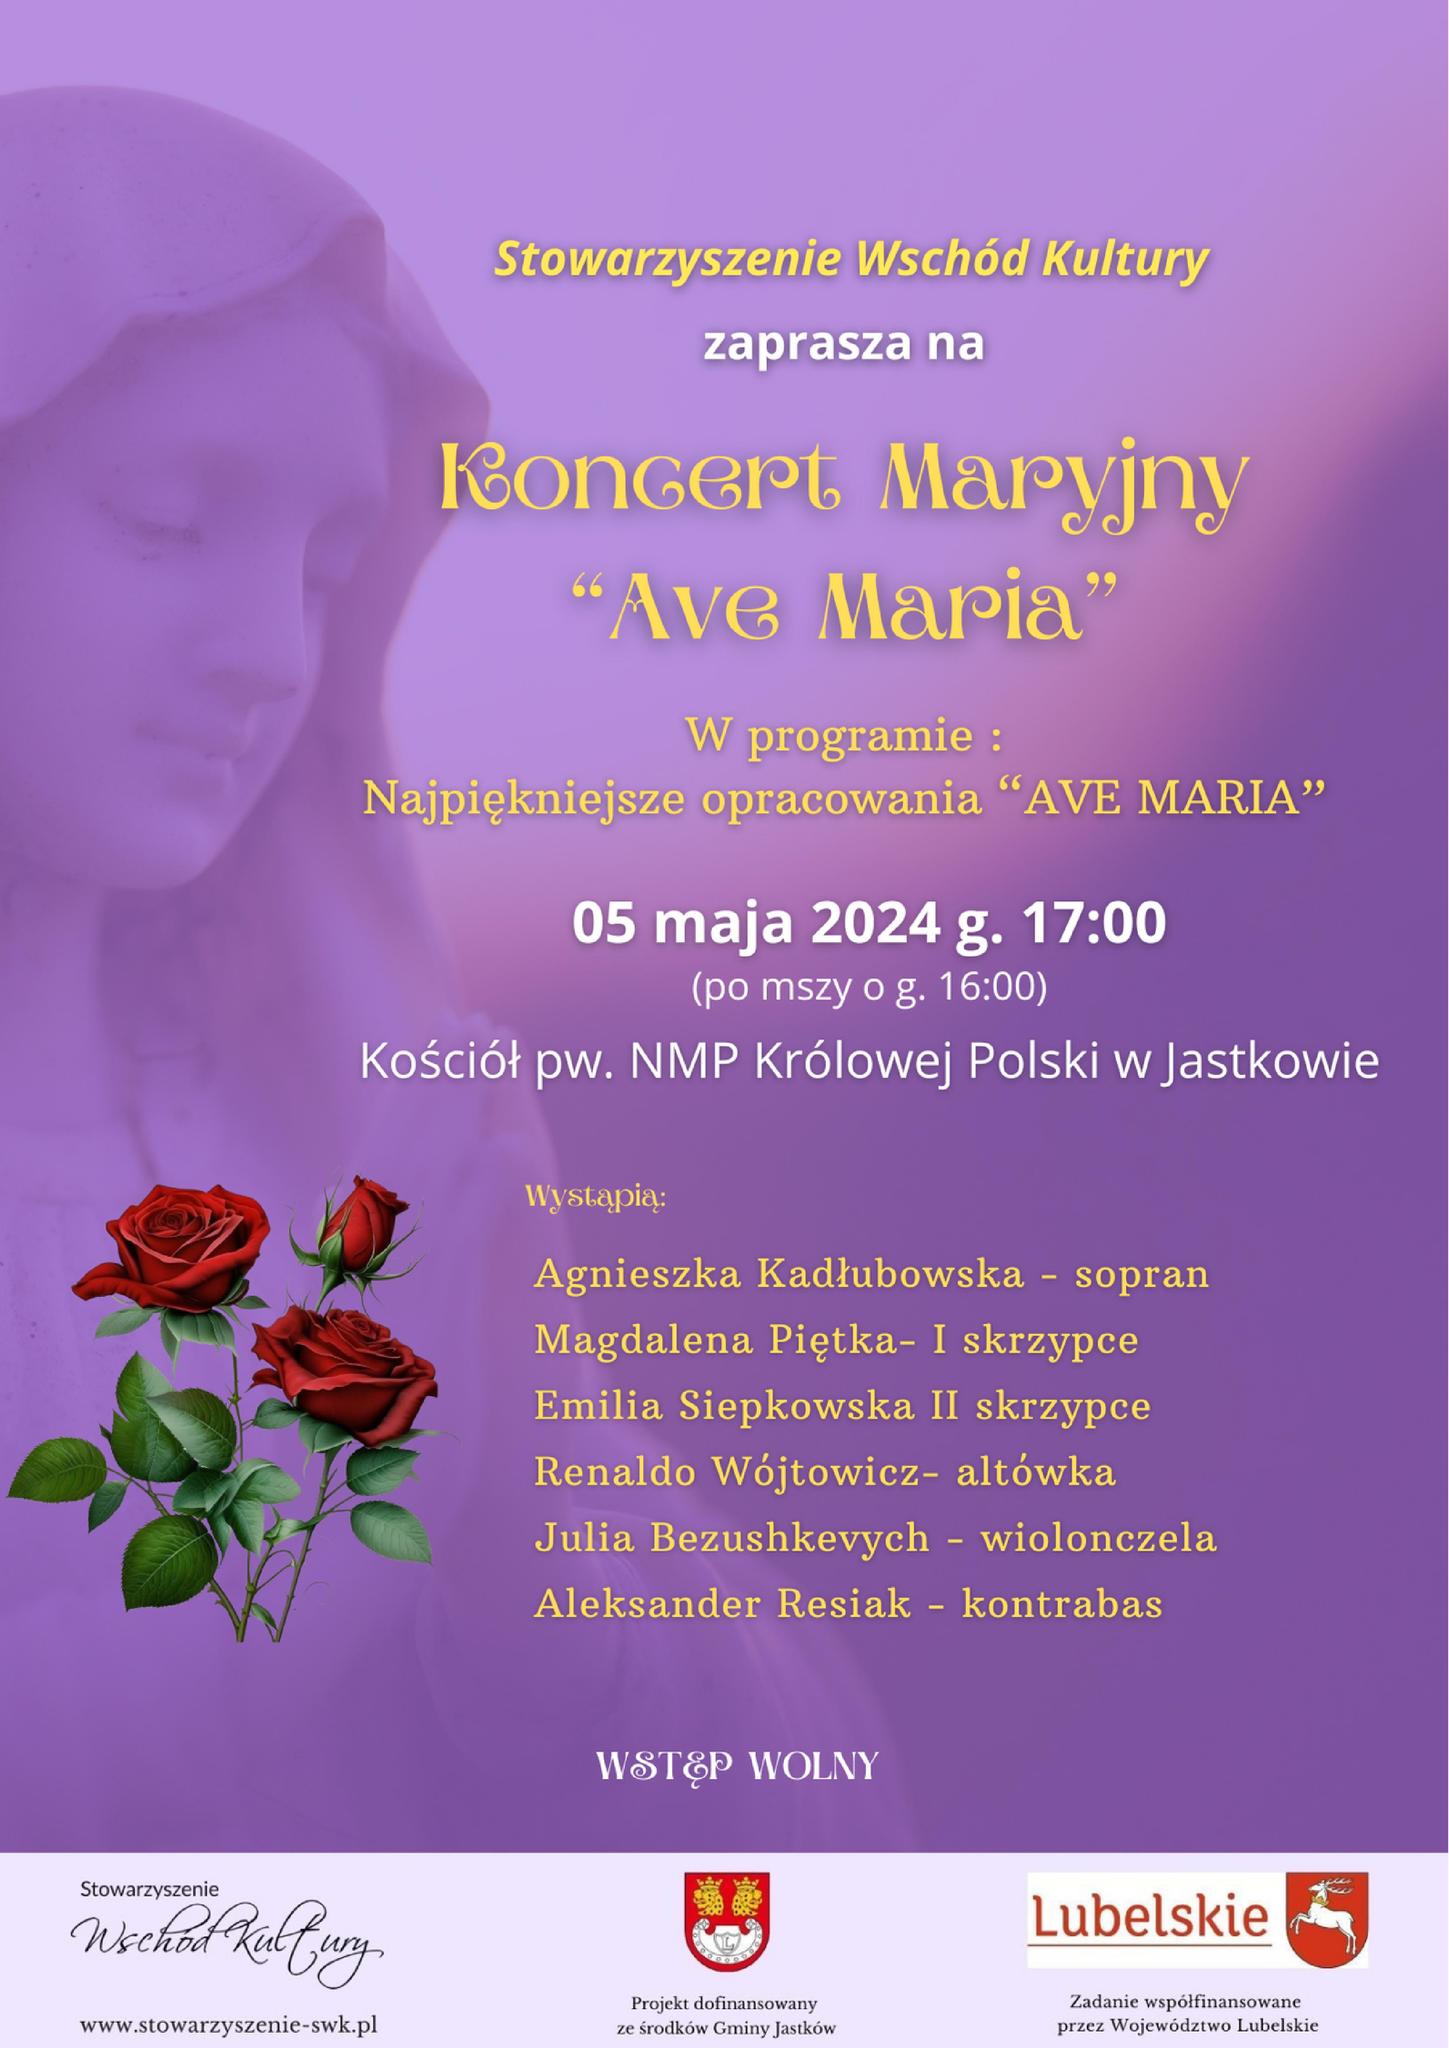 Stowarzyszenie Wschód Kultury zaprasza na koncert Ave Maria